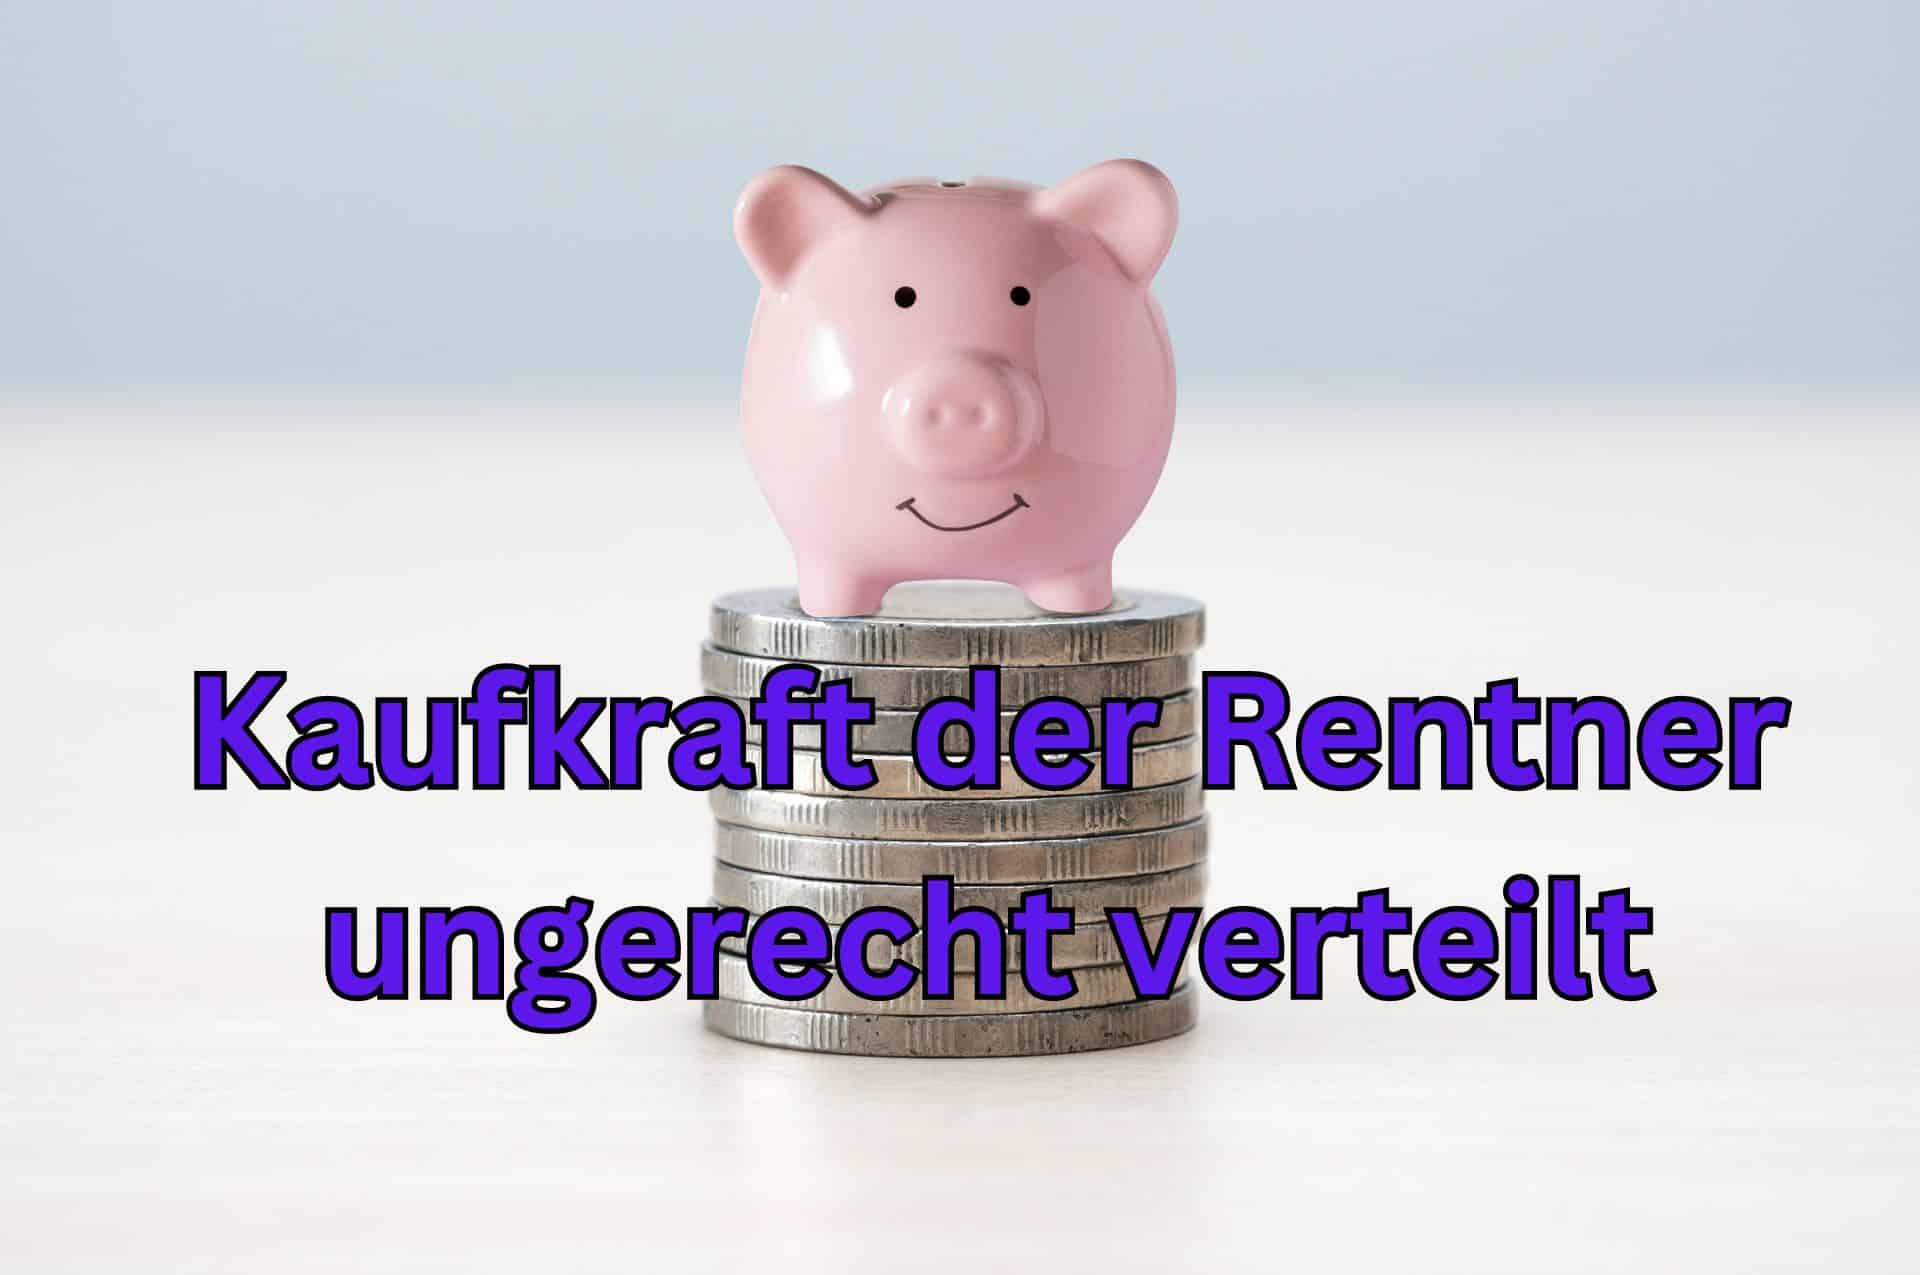 Die Rente hat eine unterschiedliche Kaufkraft, je nach Region in Deutschland.